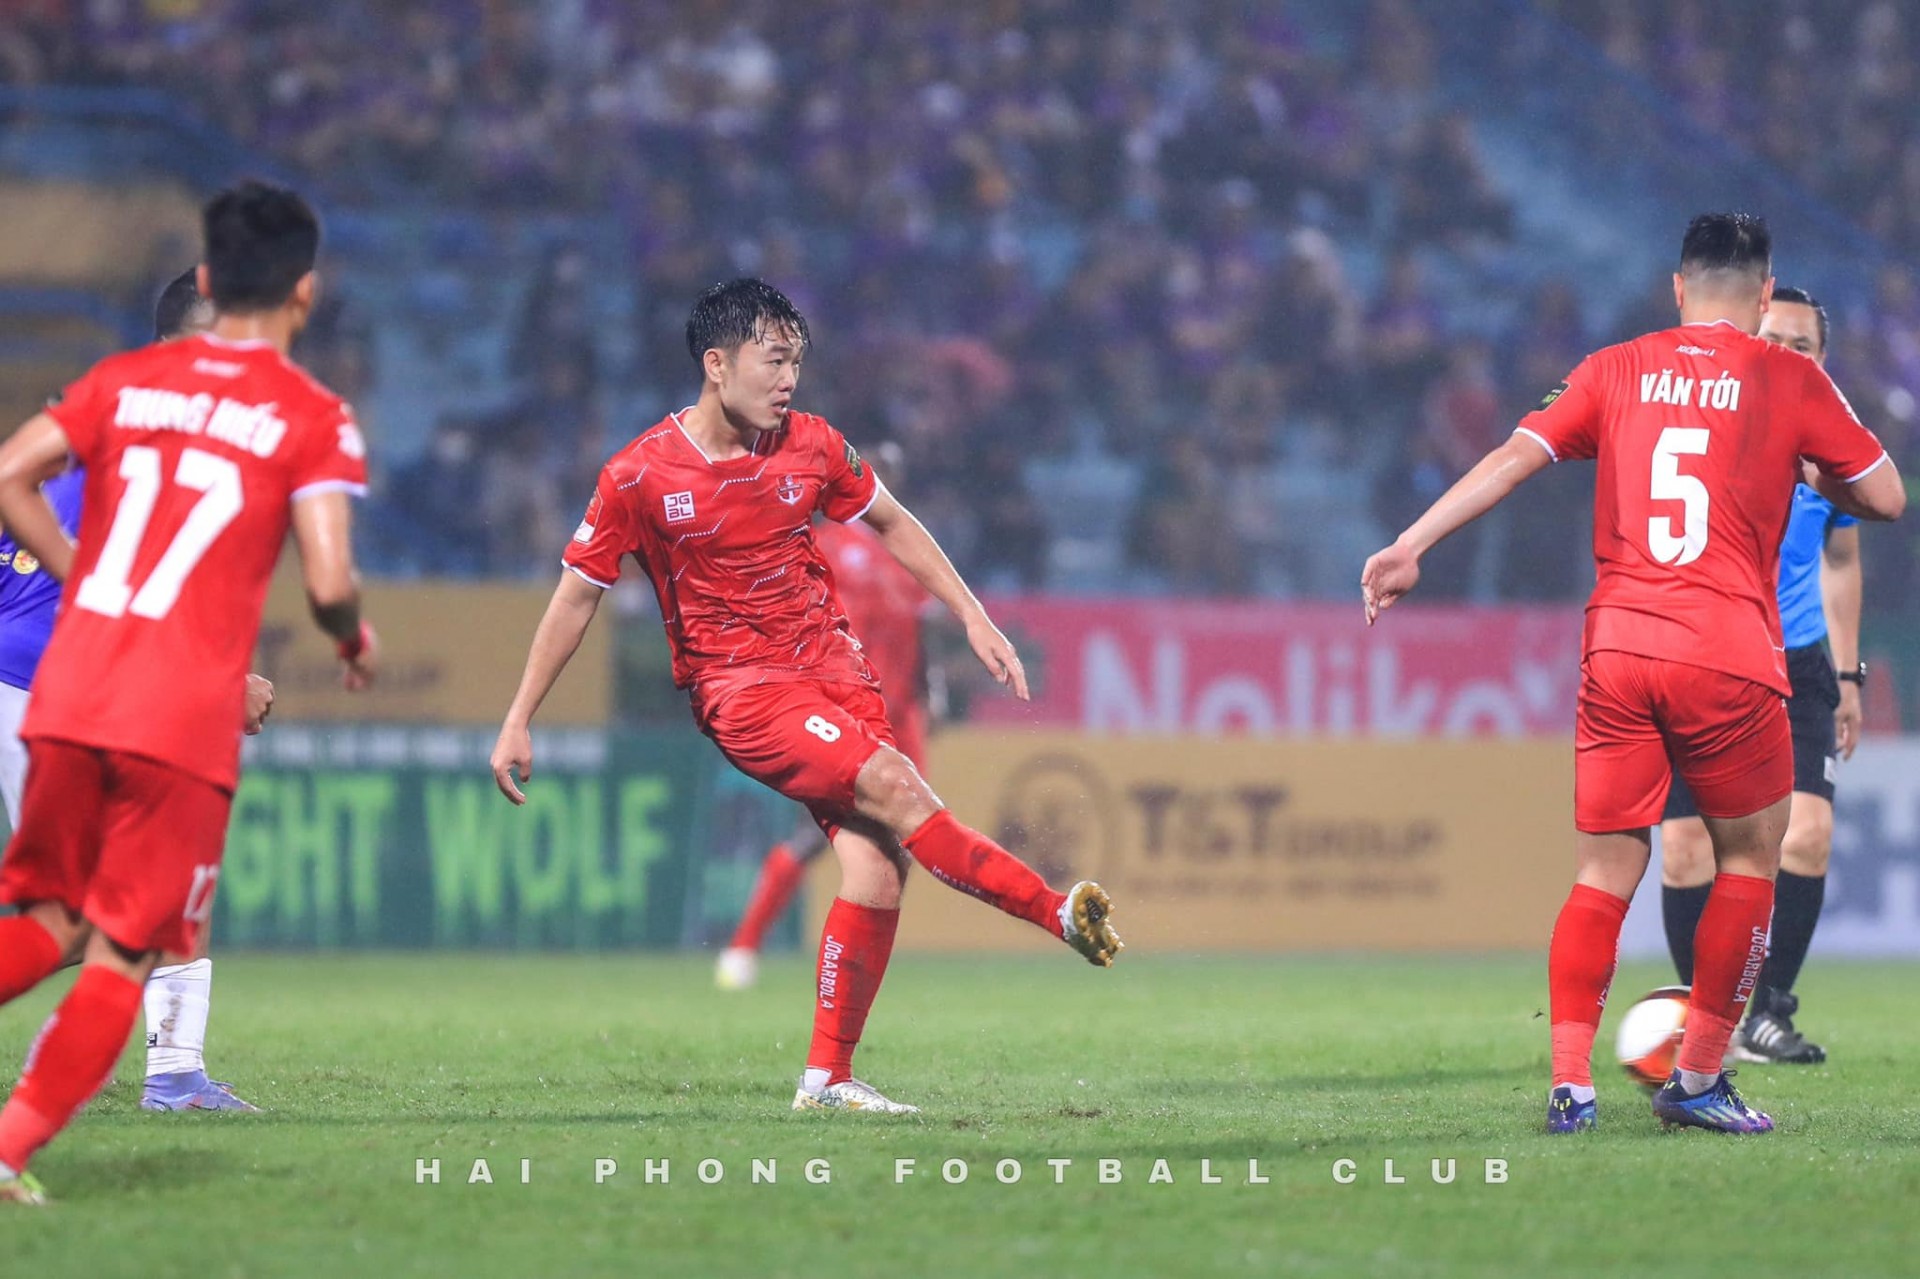 Pháo sáng đã trở thành vấn đề nhức nhối trong những lần đối đầu giữa Hà Nội và Hải Phòng trên sân Hàng Đẫy. (Ảnh: Hai Phong Football Club)